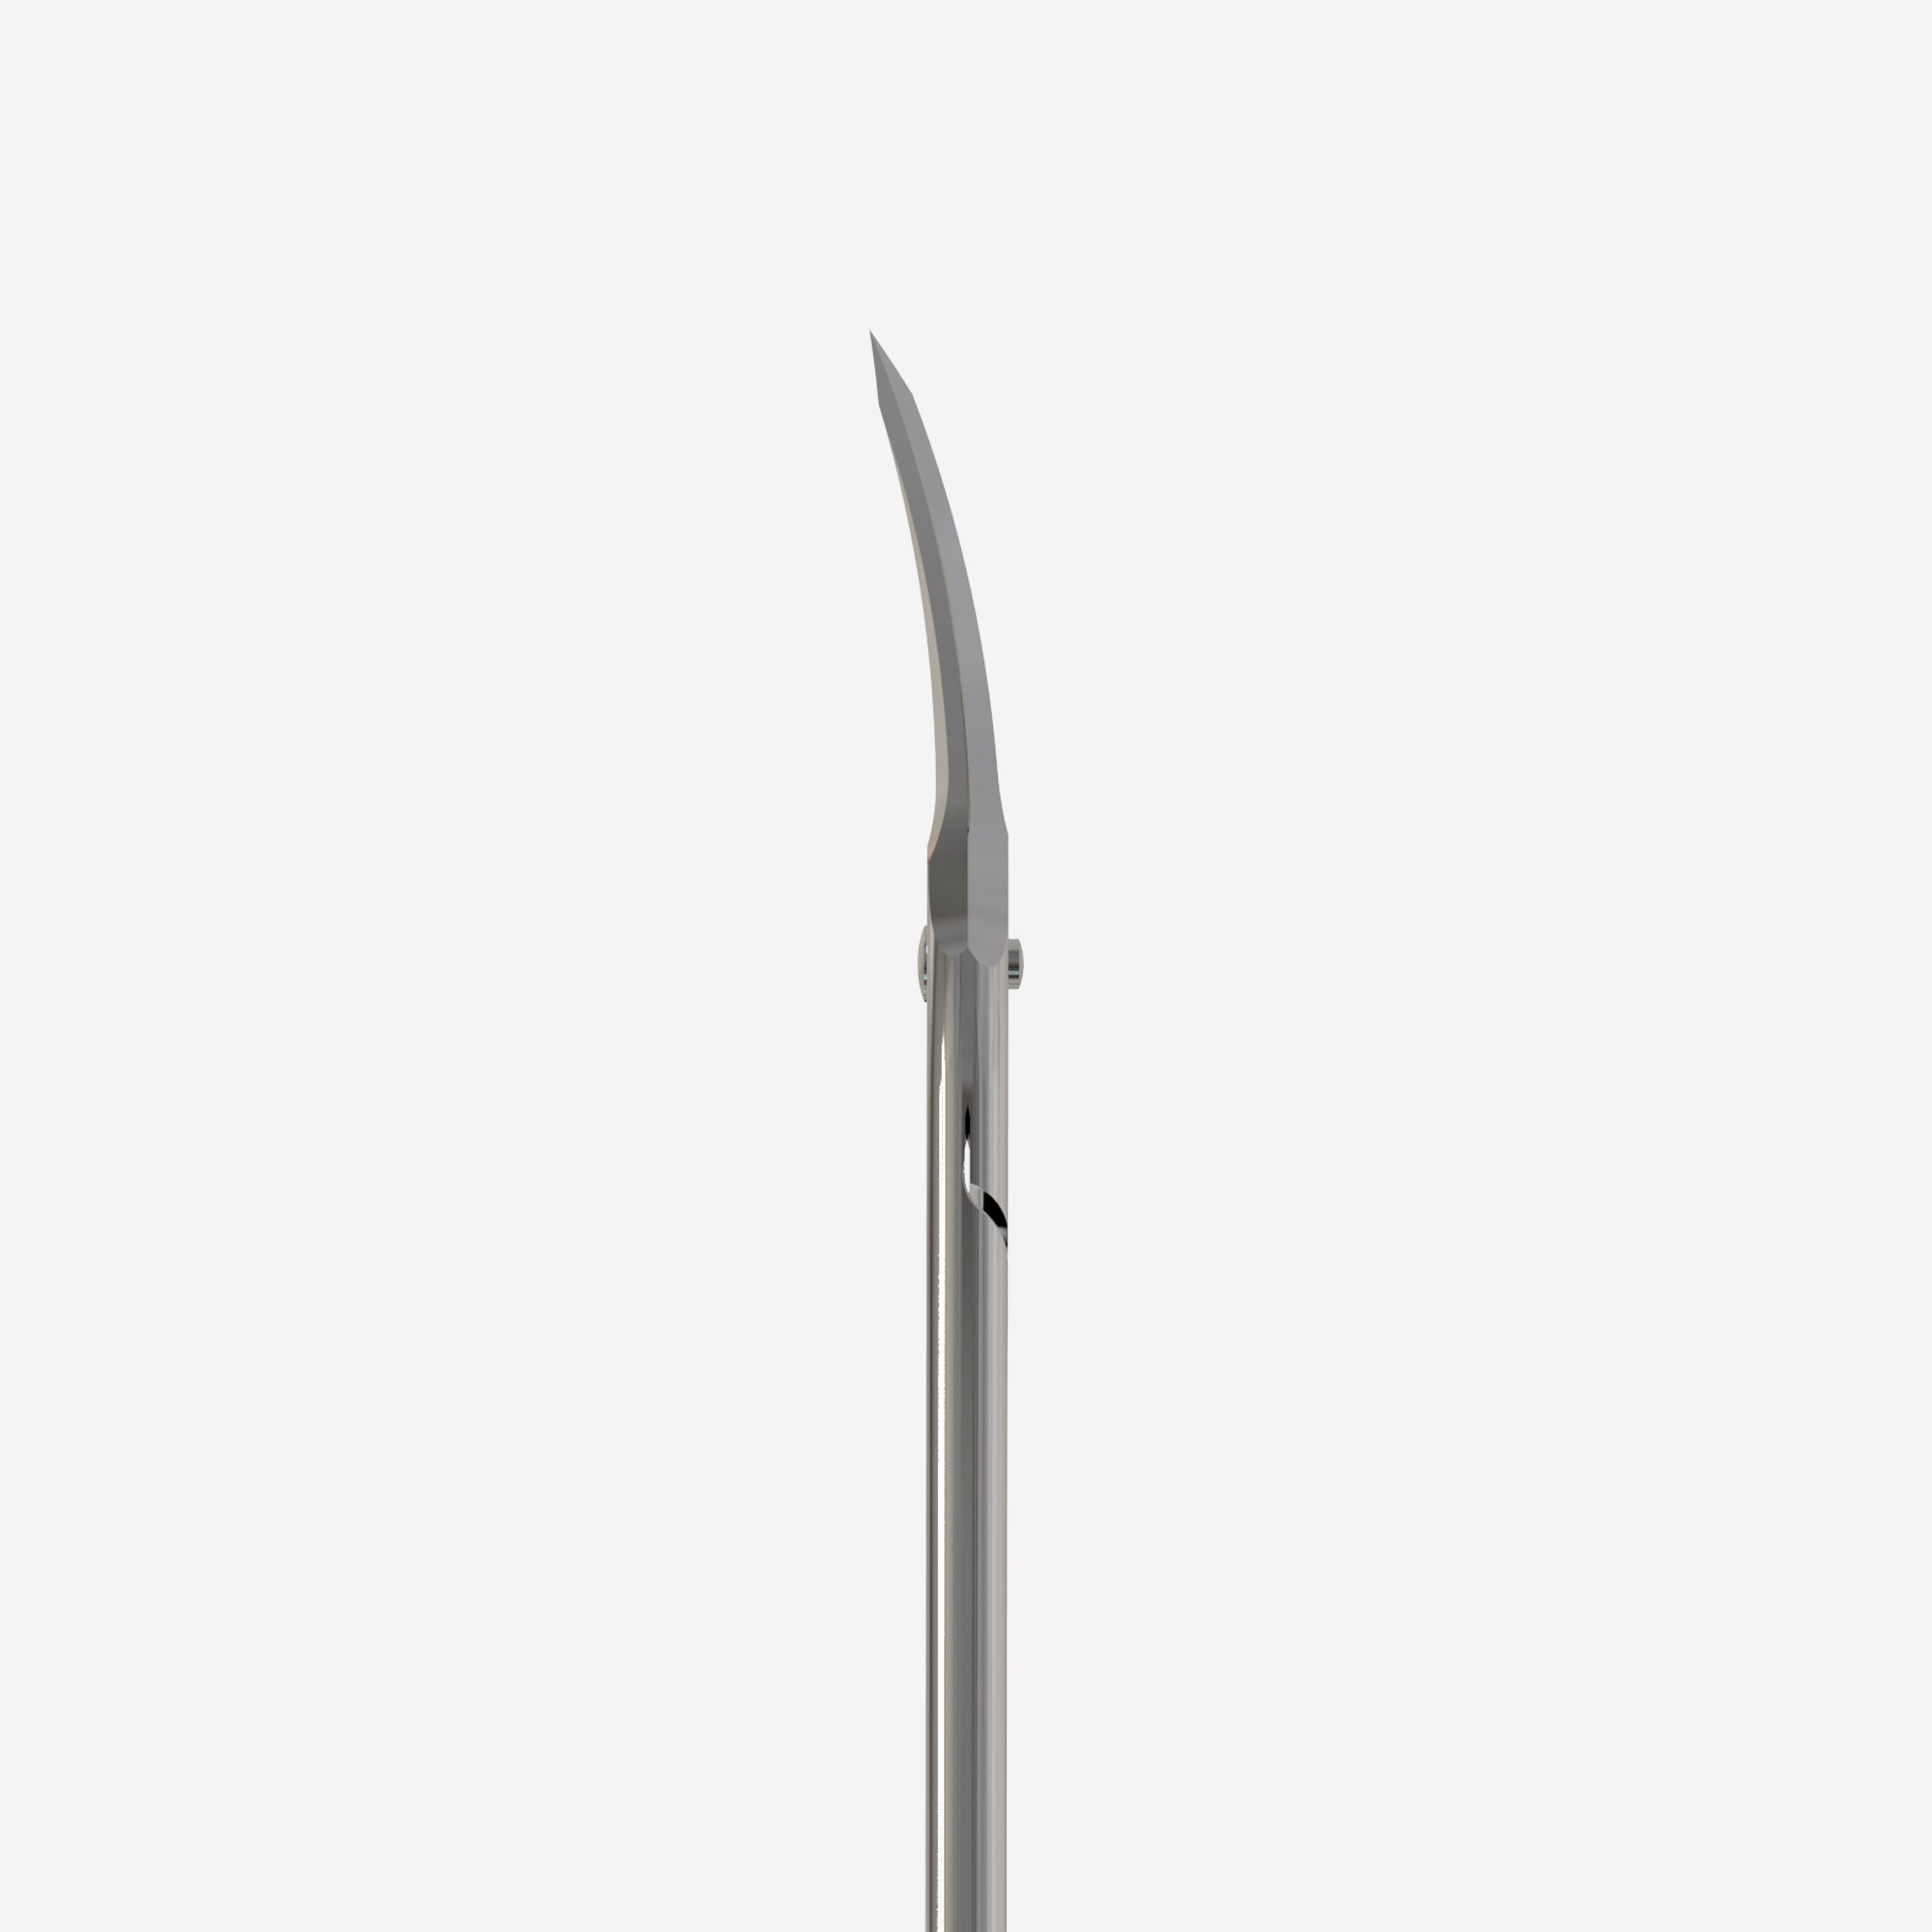 Professional cuticle scissors "Asymmetric" UNIQ 30 TYPE 4